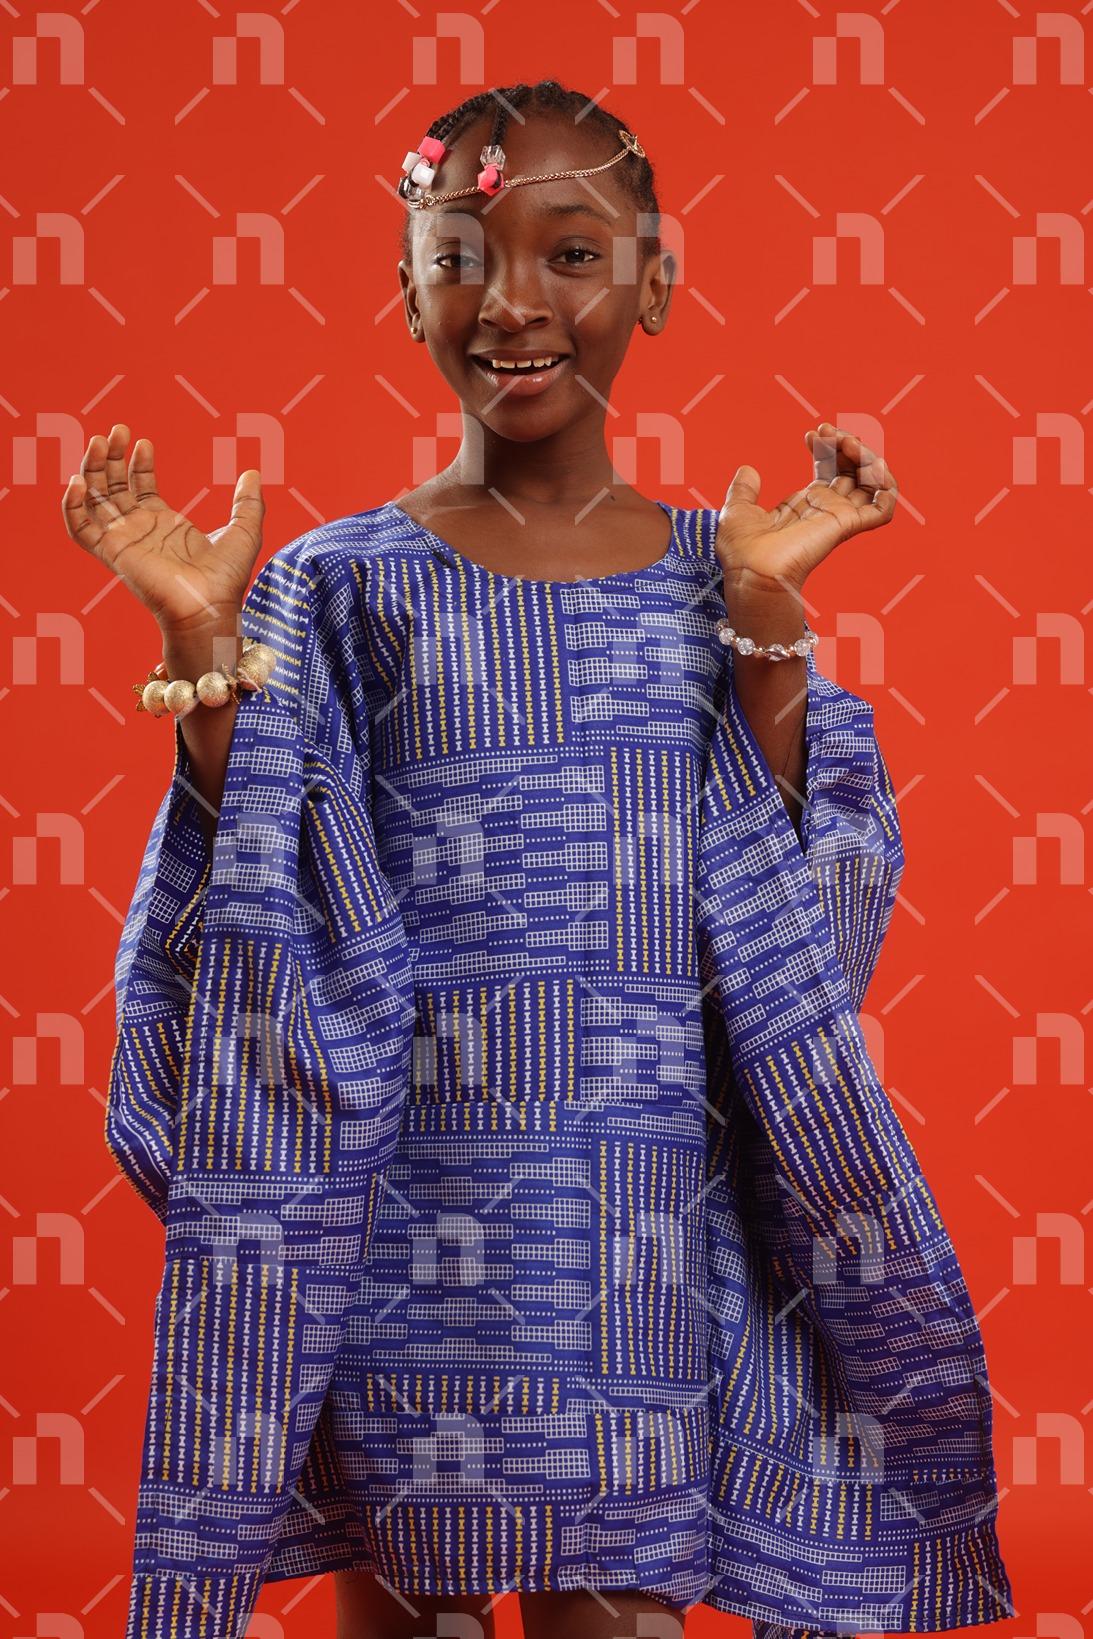 fillette-africaine-moderne-vetue-dune-robe-de-couleur-bleu-servant-un-sourire-de-bienvenue-pour-une-photo-studio